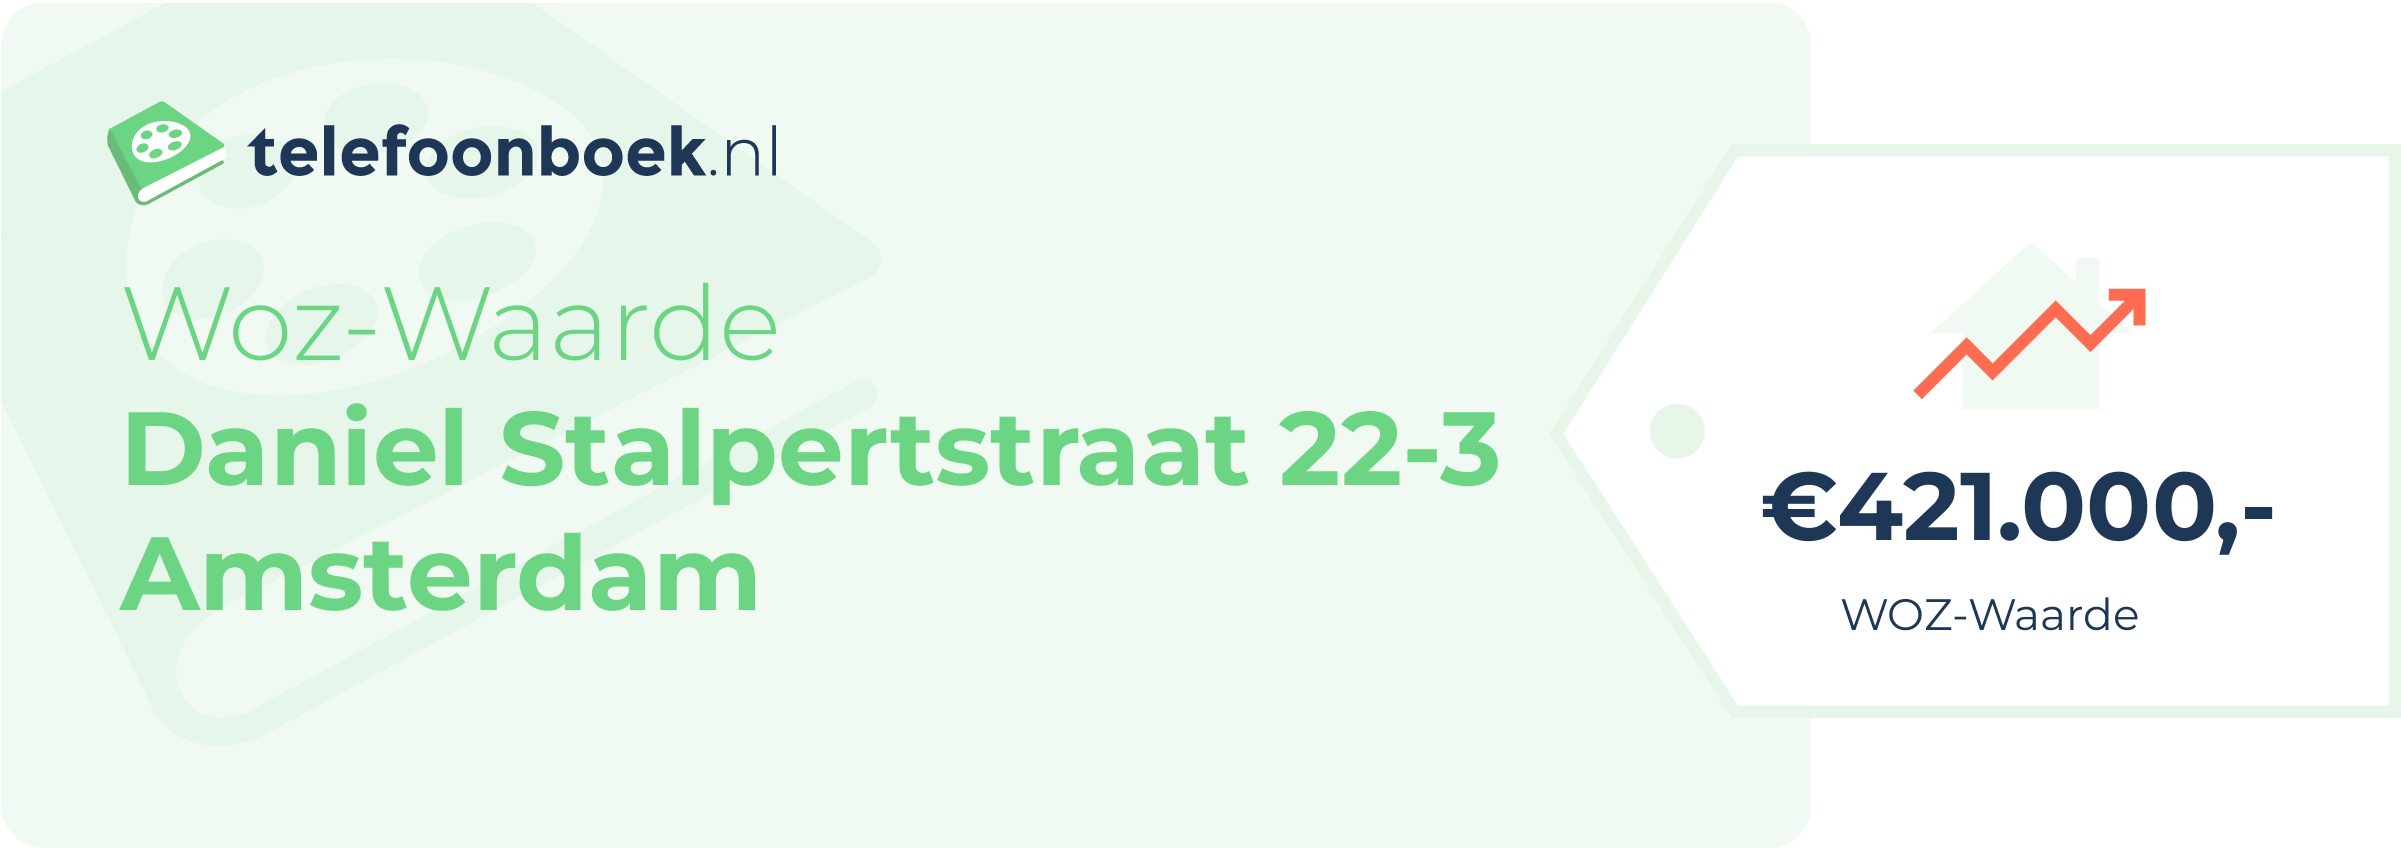 WOZ-waarde Daniel Stalpertstraat 22-3 Amsterdam